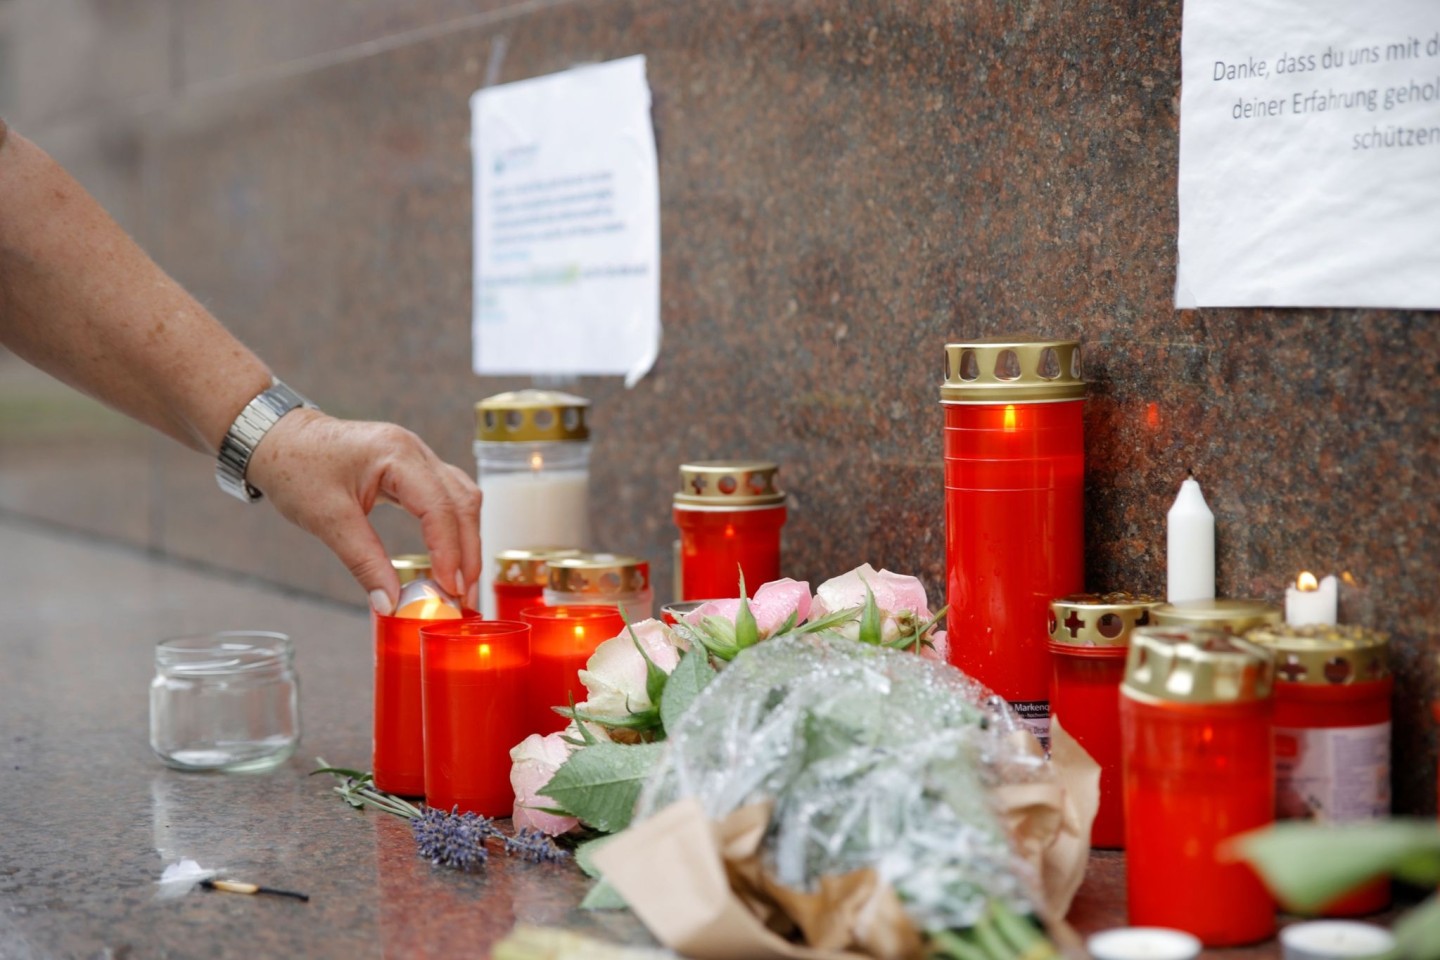 Trauernde haben Blumen und Kerzen vor dem Gesundheitsministerium in Wien niedergelegt.